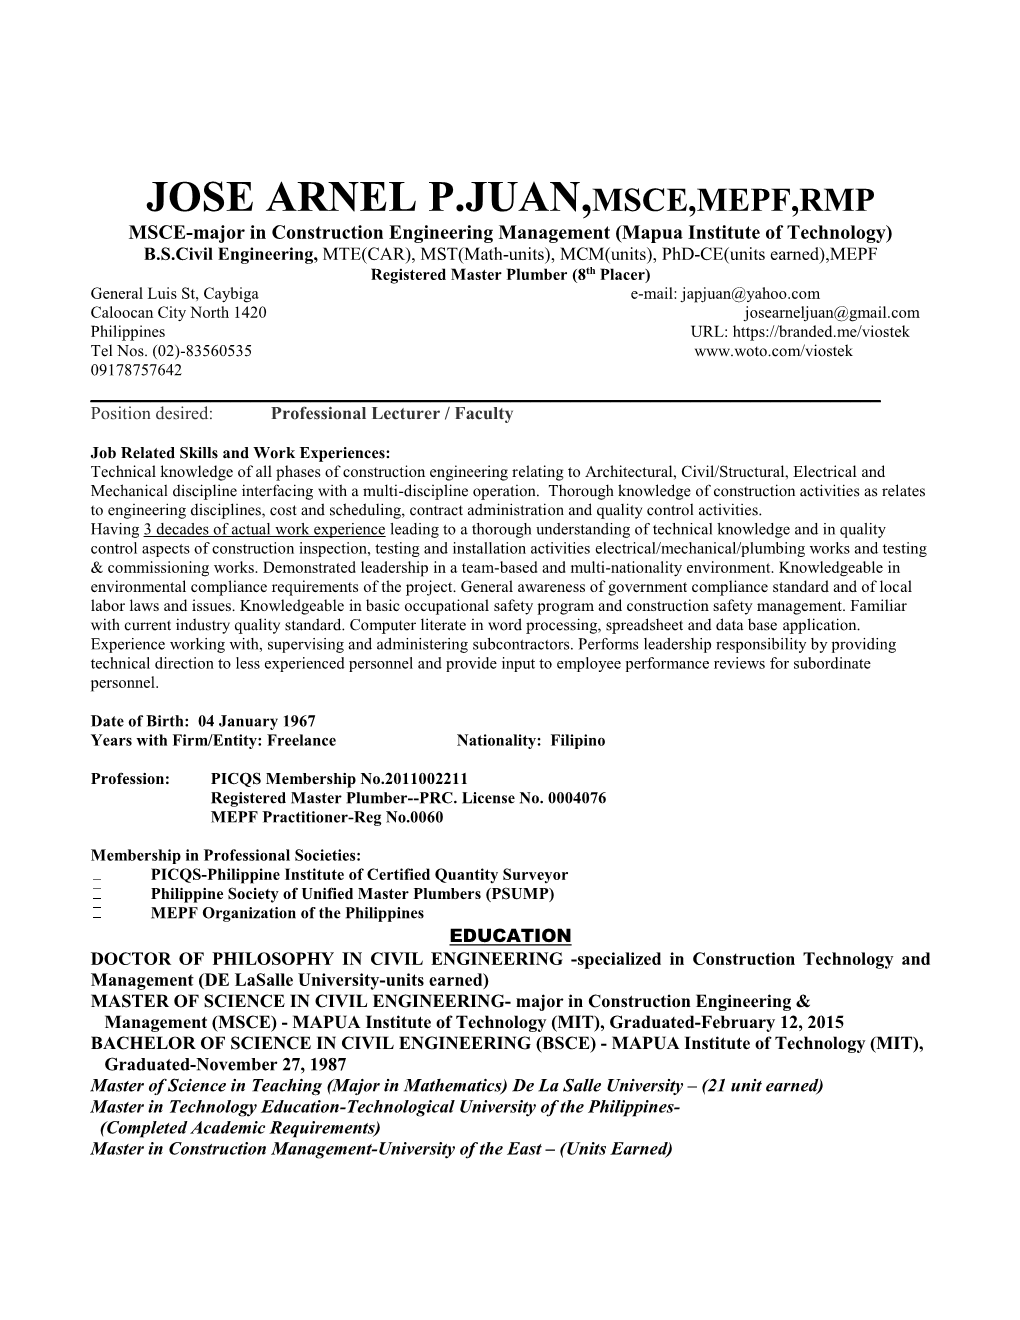 Curriculum Vitae of Jose Arnel P.Juan